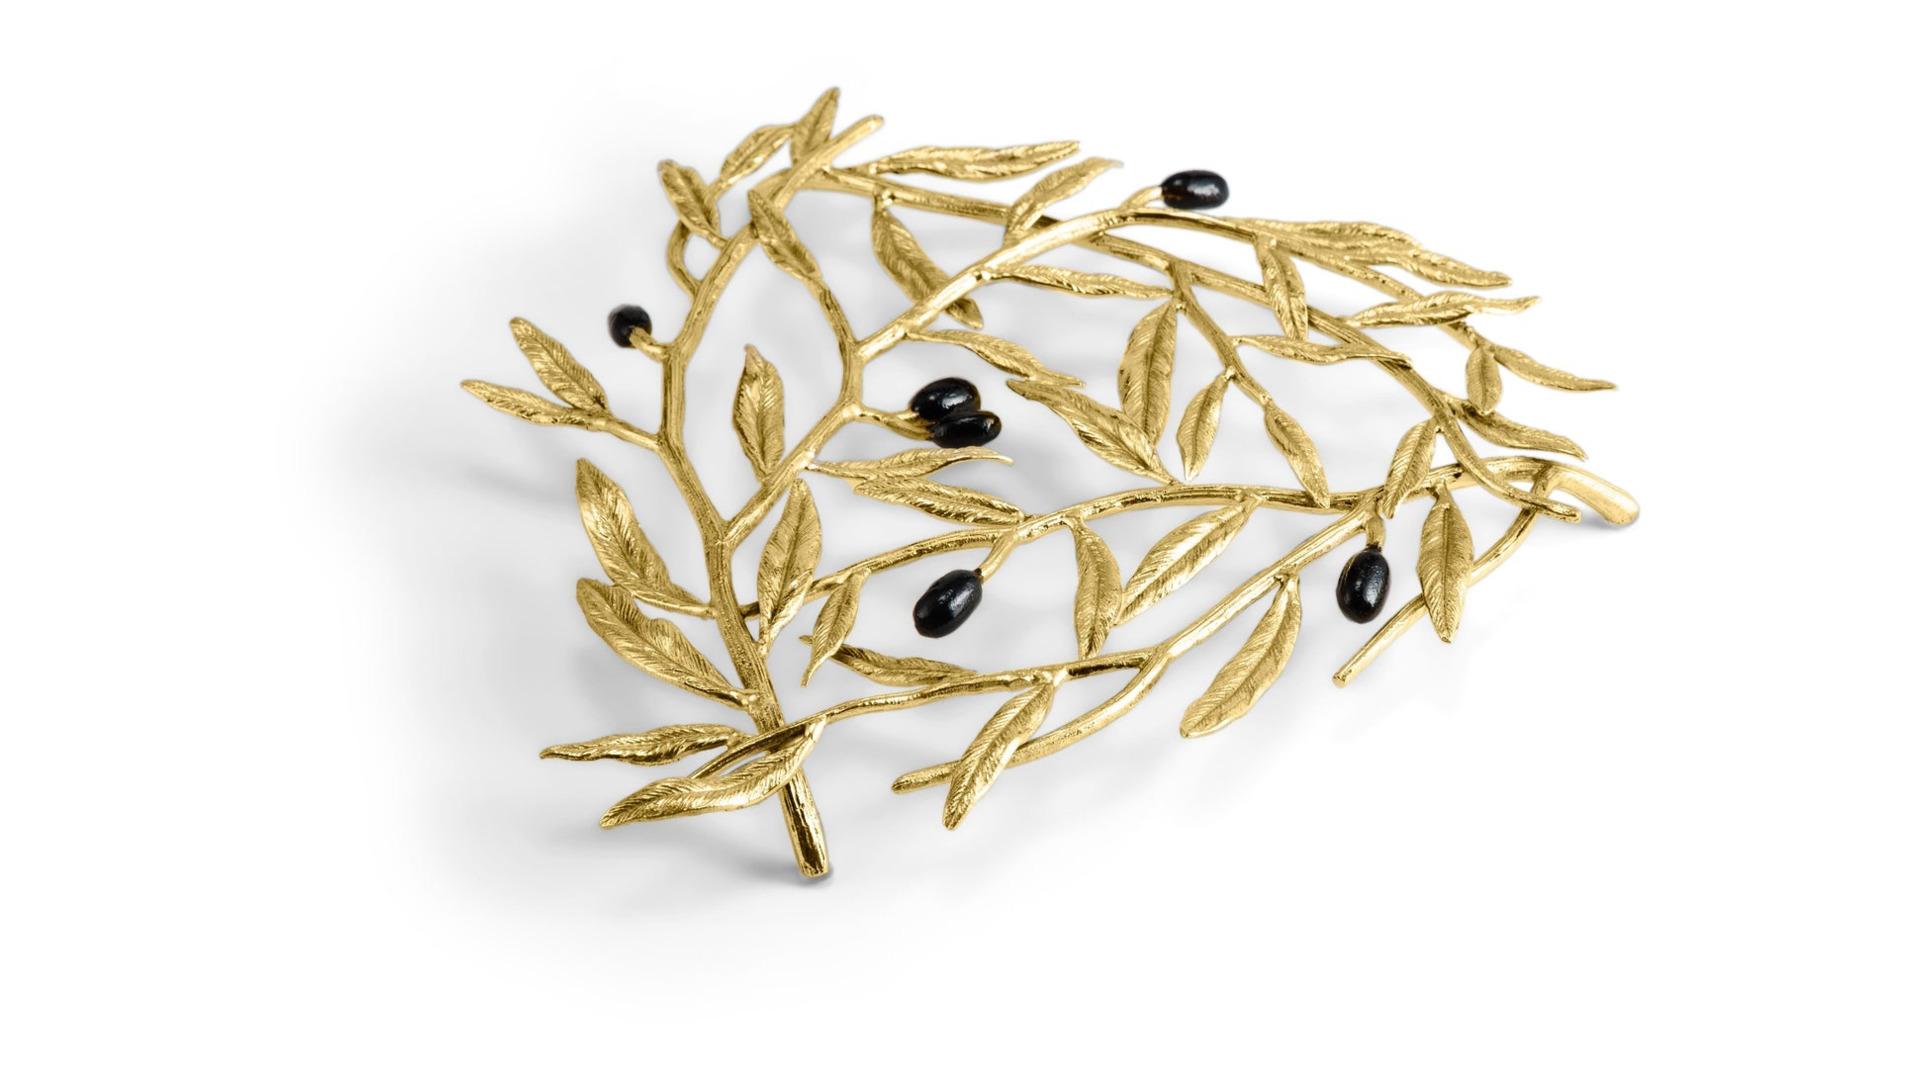 Подставка под горячее Michael Aram Золотая оливковая ветвь 24х22 см, латунь